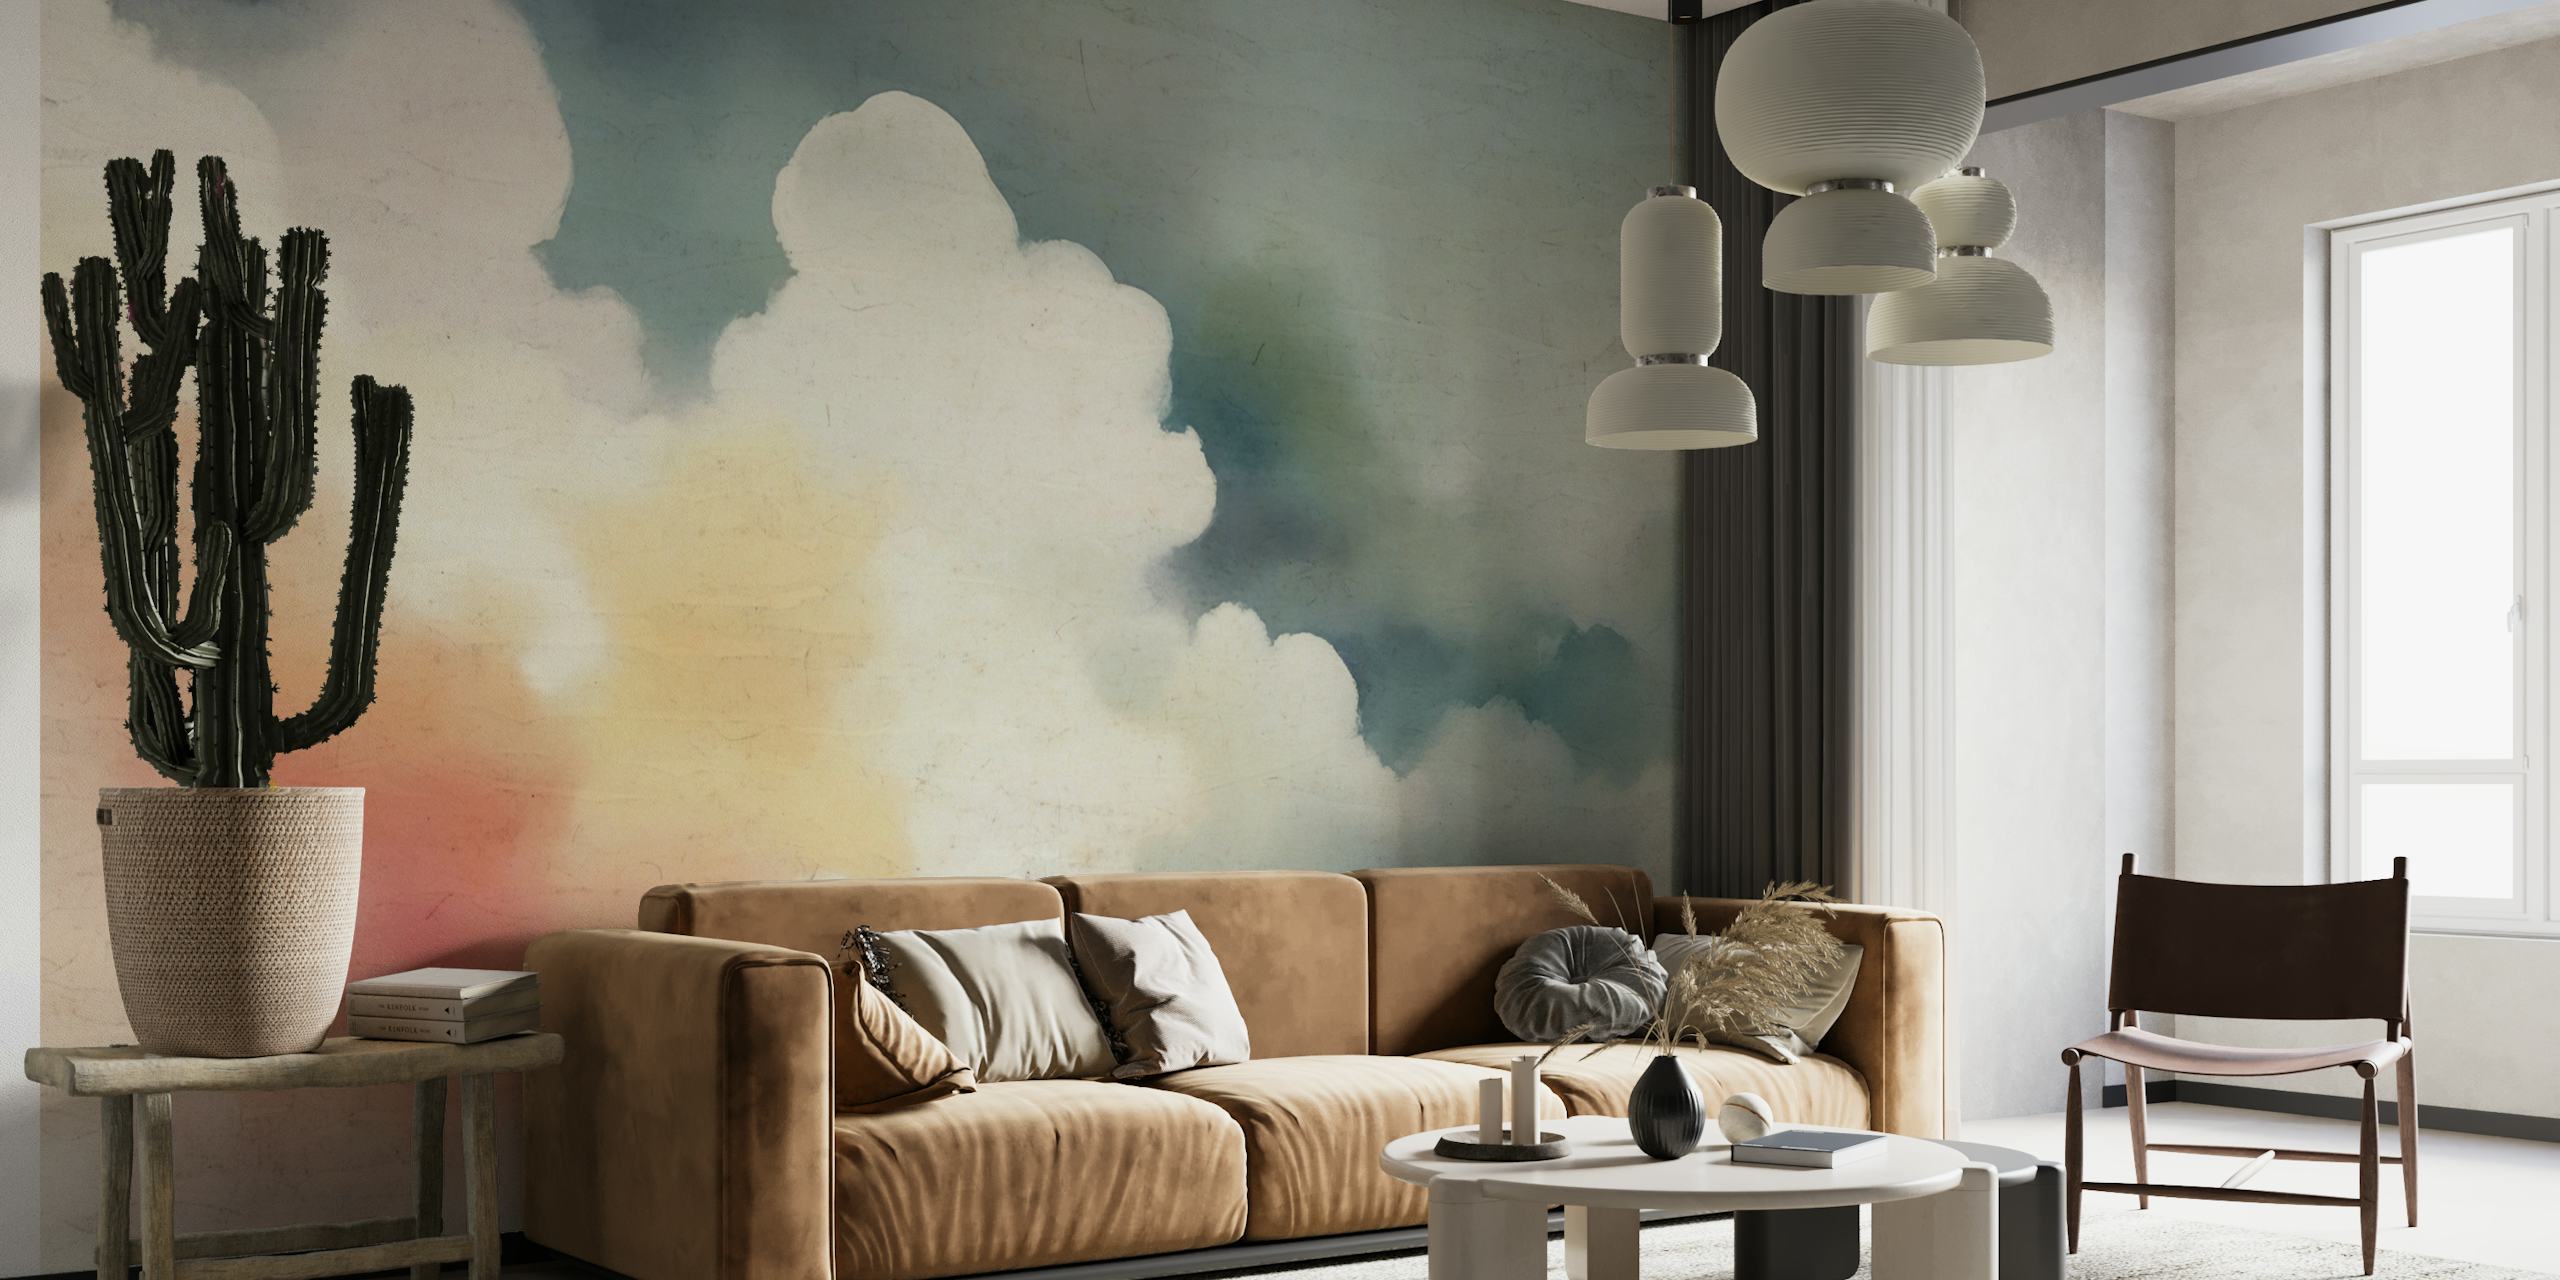 Murale con nuvole dai colori pastello che evoca tranquillità e serenità